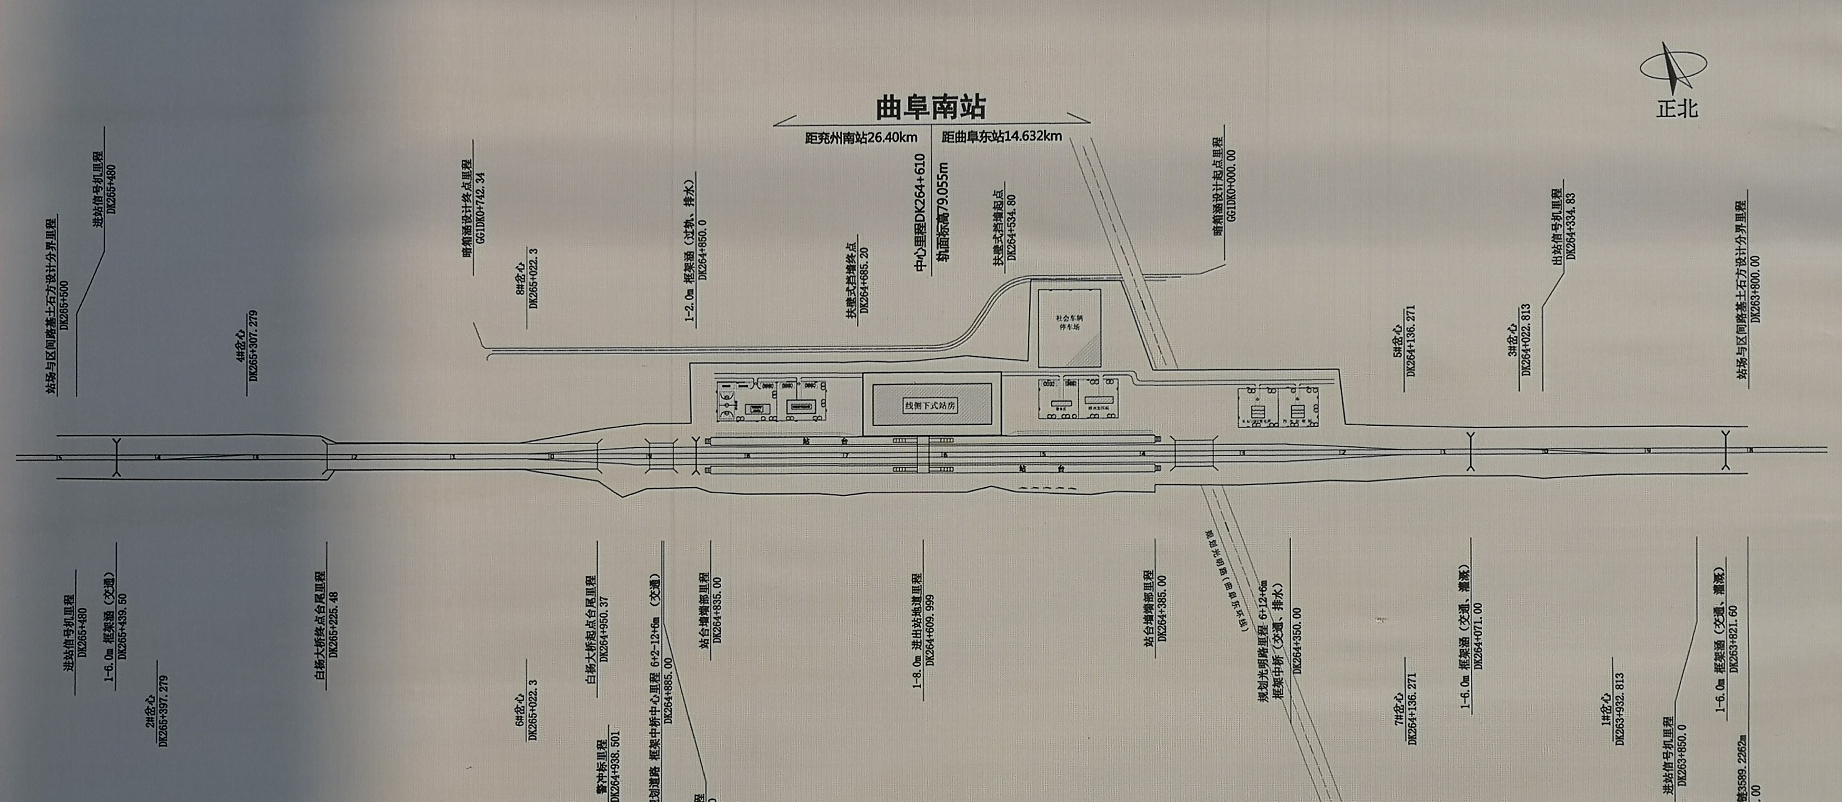 山东省曲阜市主要的三座火车站一览